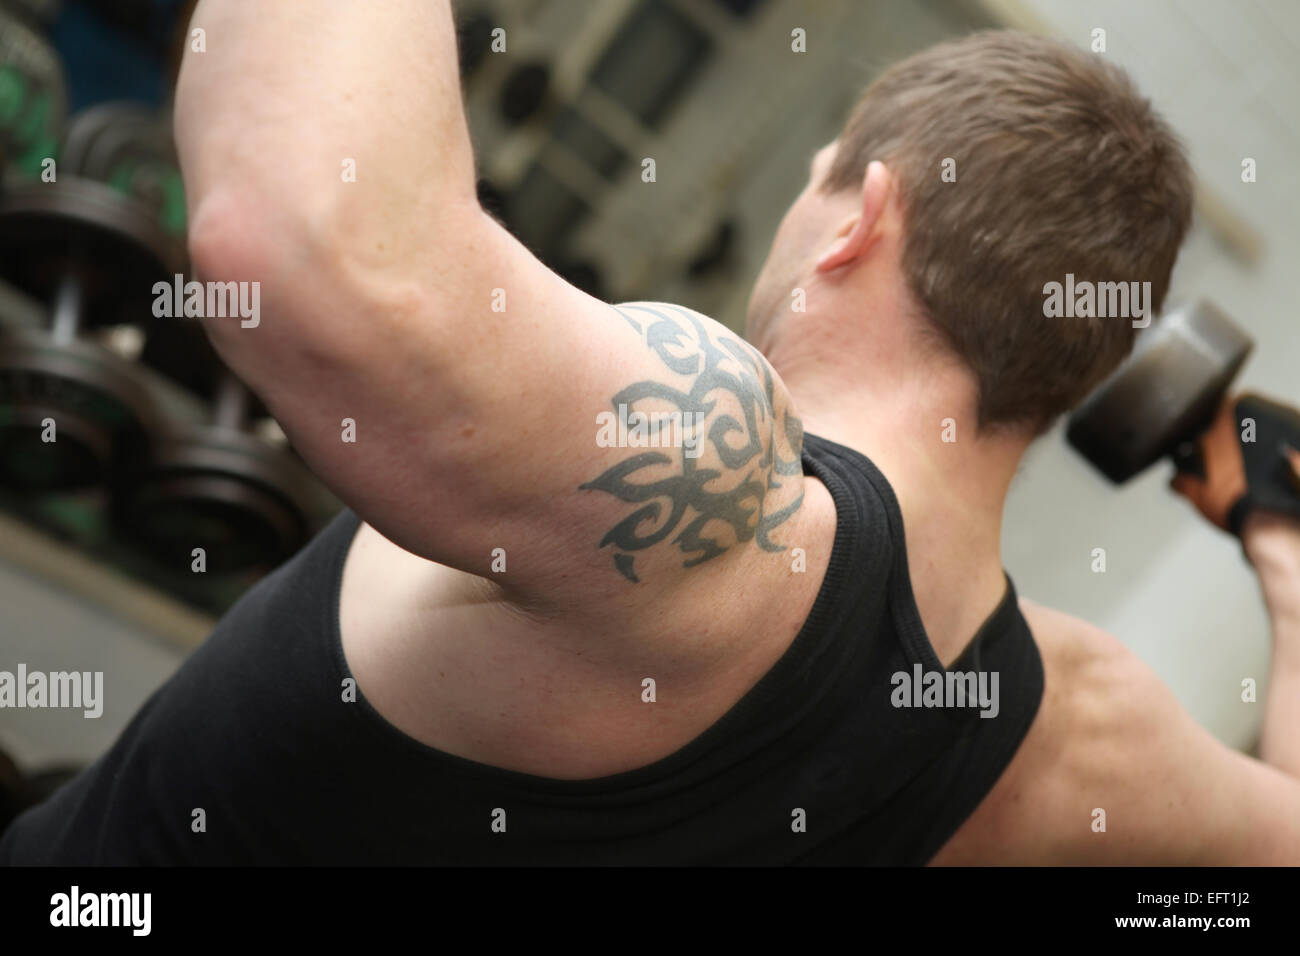 Corsi di formazione o allenamento in palestra. Maschio di sollevamento di pesi per costruire il muscolo in spalle Foto Stock